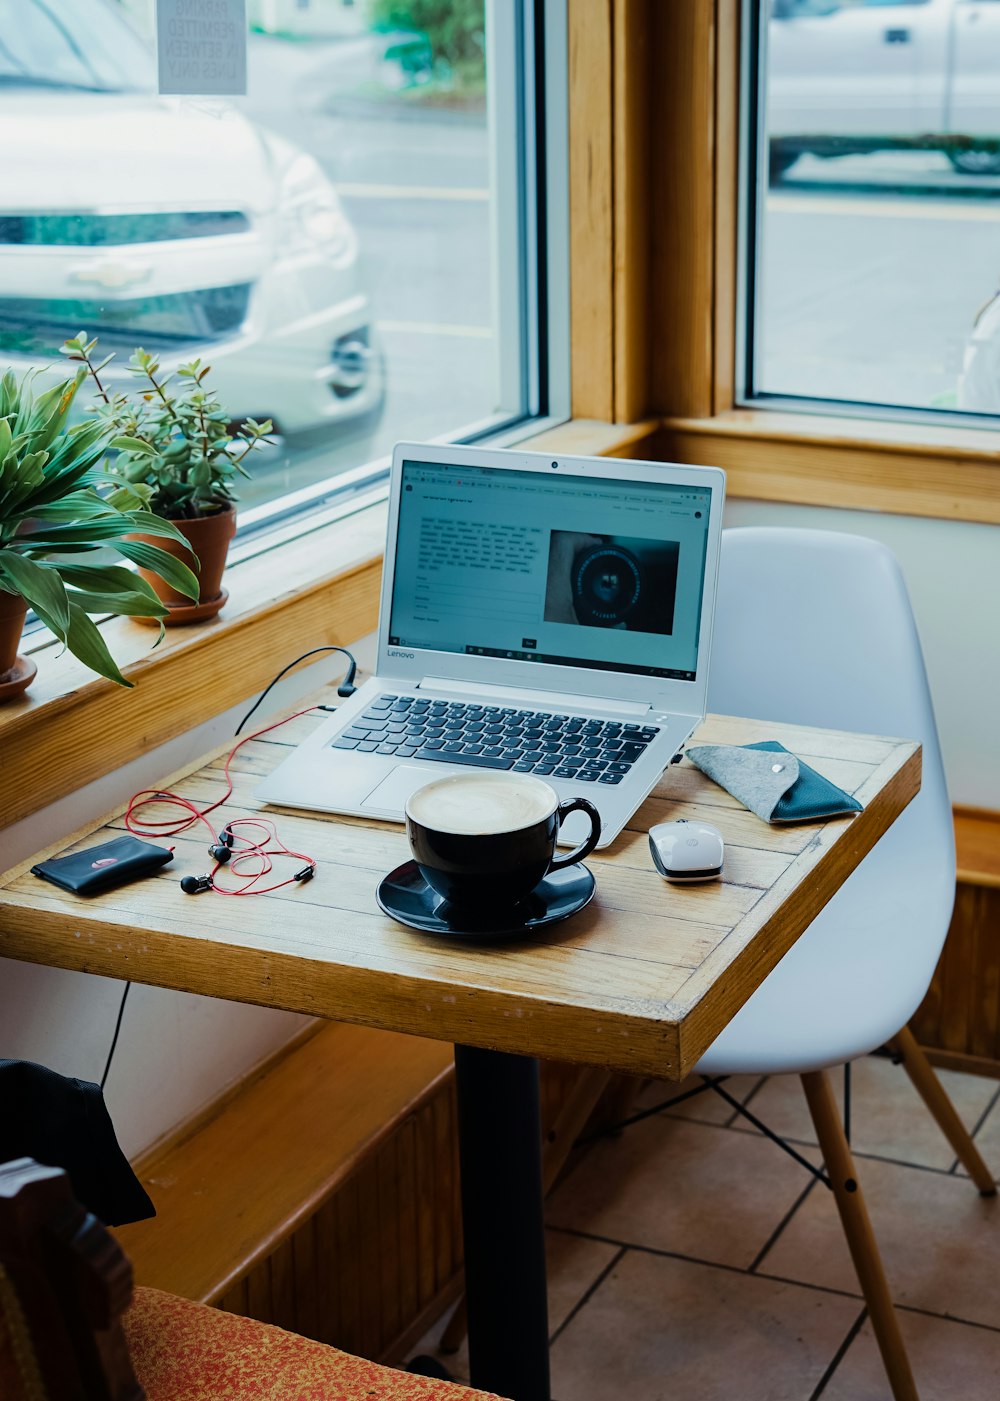 xícara de café, computador portátil e fones de ouvido vermelhos plugados no laptop na mesa de madeira marrom